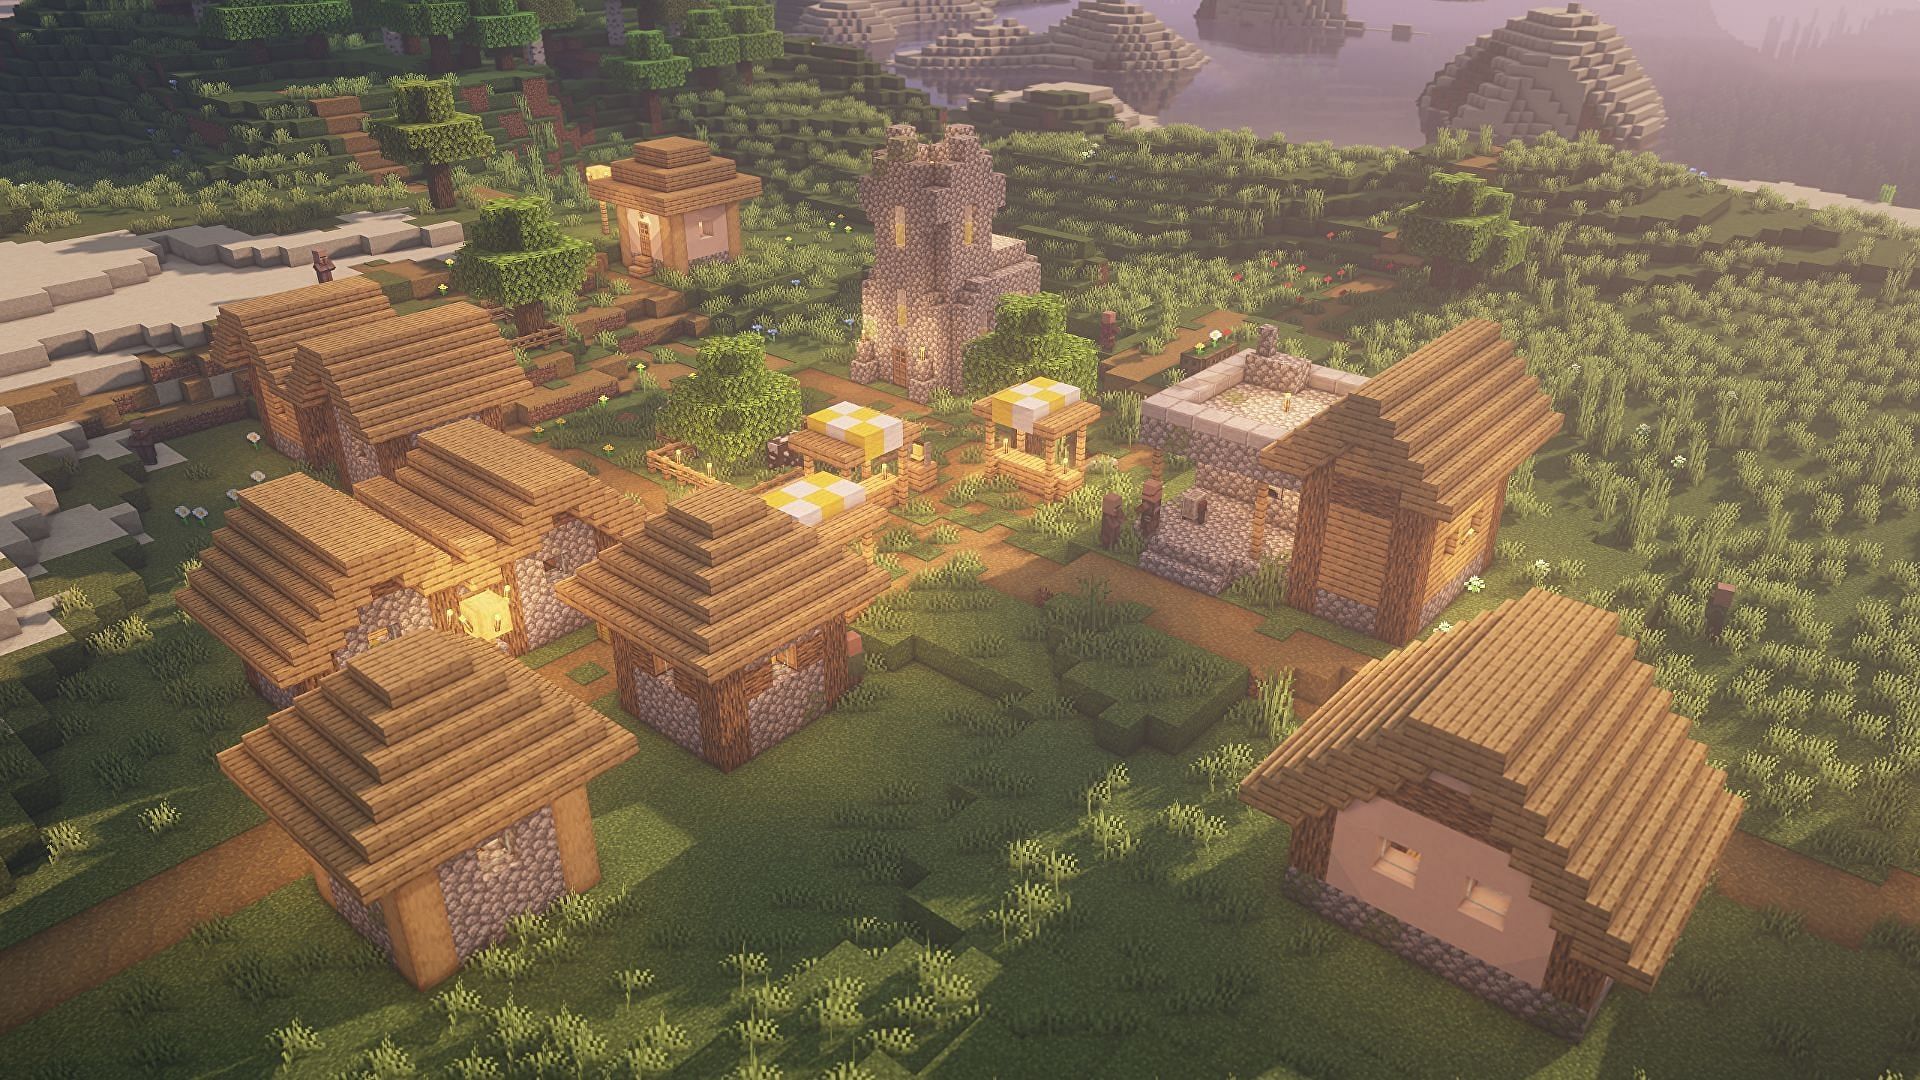 Villages in Minecraft (Image via Minecraft)